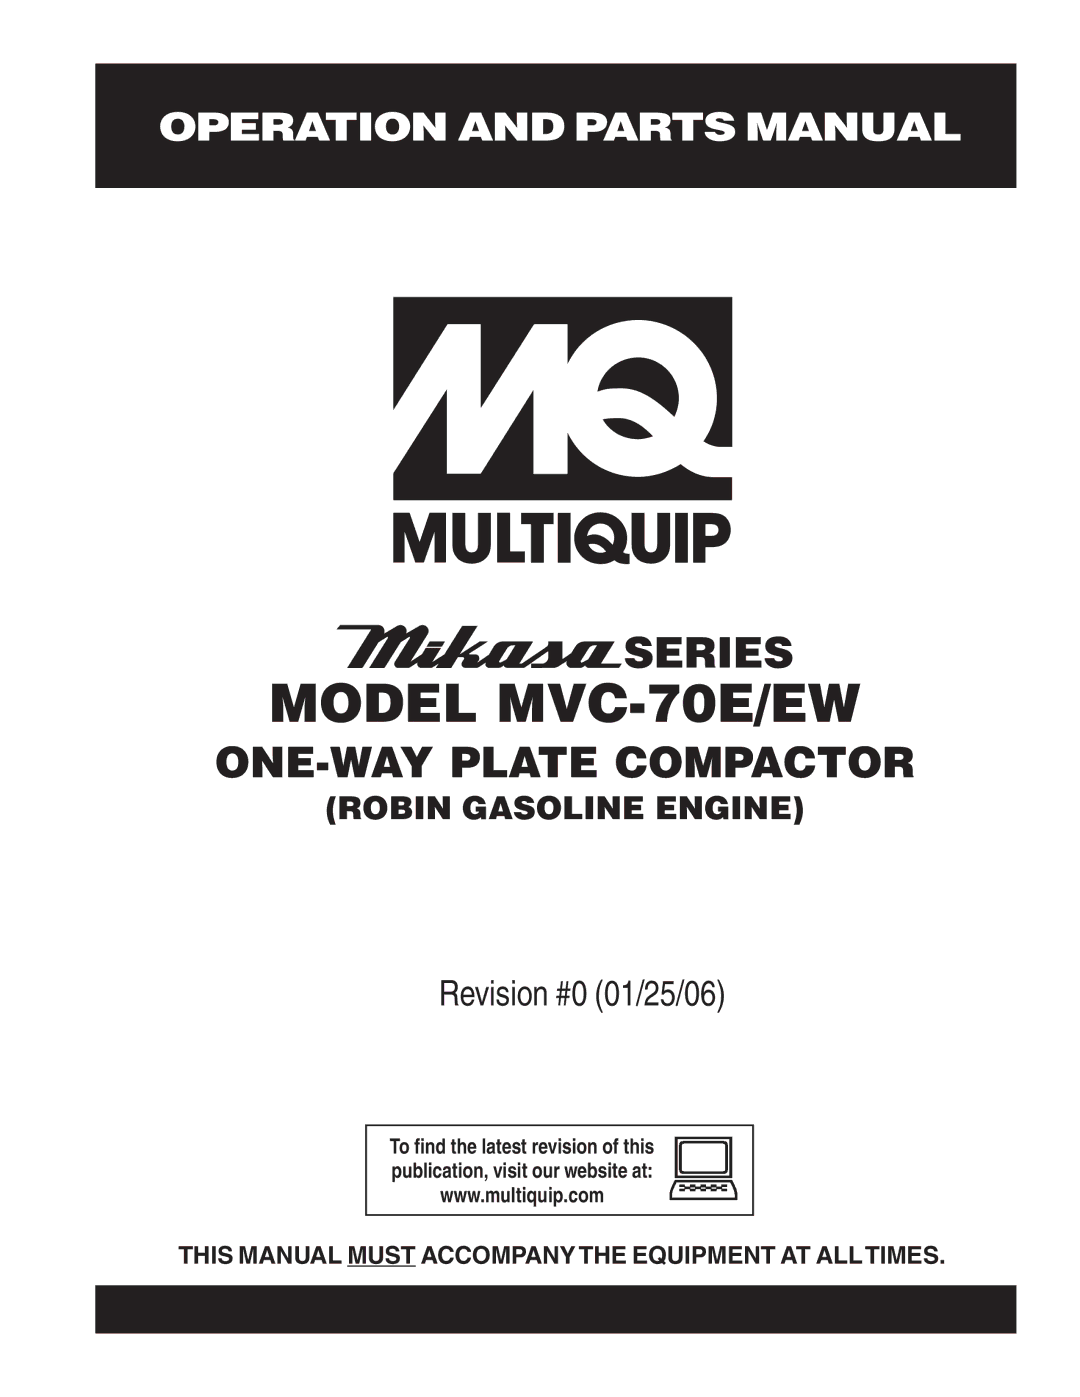 Multiquip manual Model MVC-70E/EW 